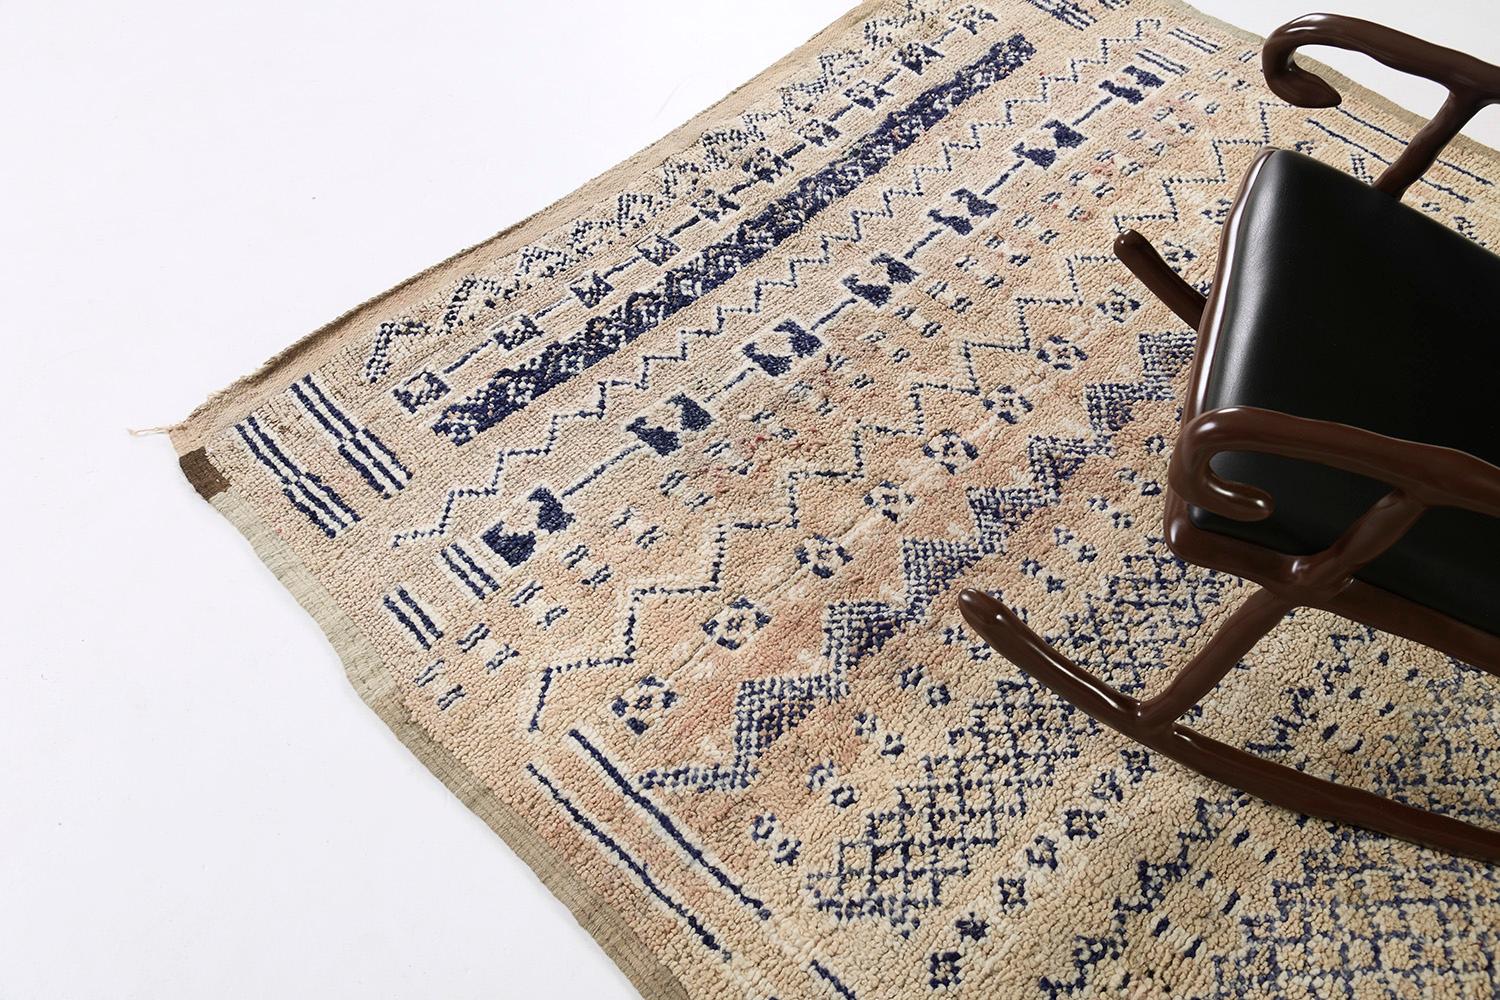 Dieser prächtige Teppich weist Fraktionen mit asymmetrischen Mustern auf, die ein Motiv bilden, das die symbolischen Berbermotive, die in diesen fesselnden Teppich eingearbeitet sind, perfekt wiedergibt. Die warmen und gemütlichen Beige- und